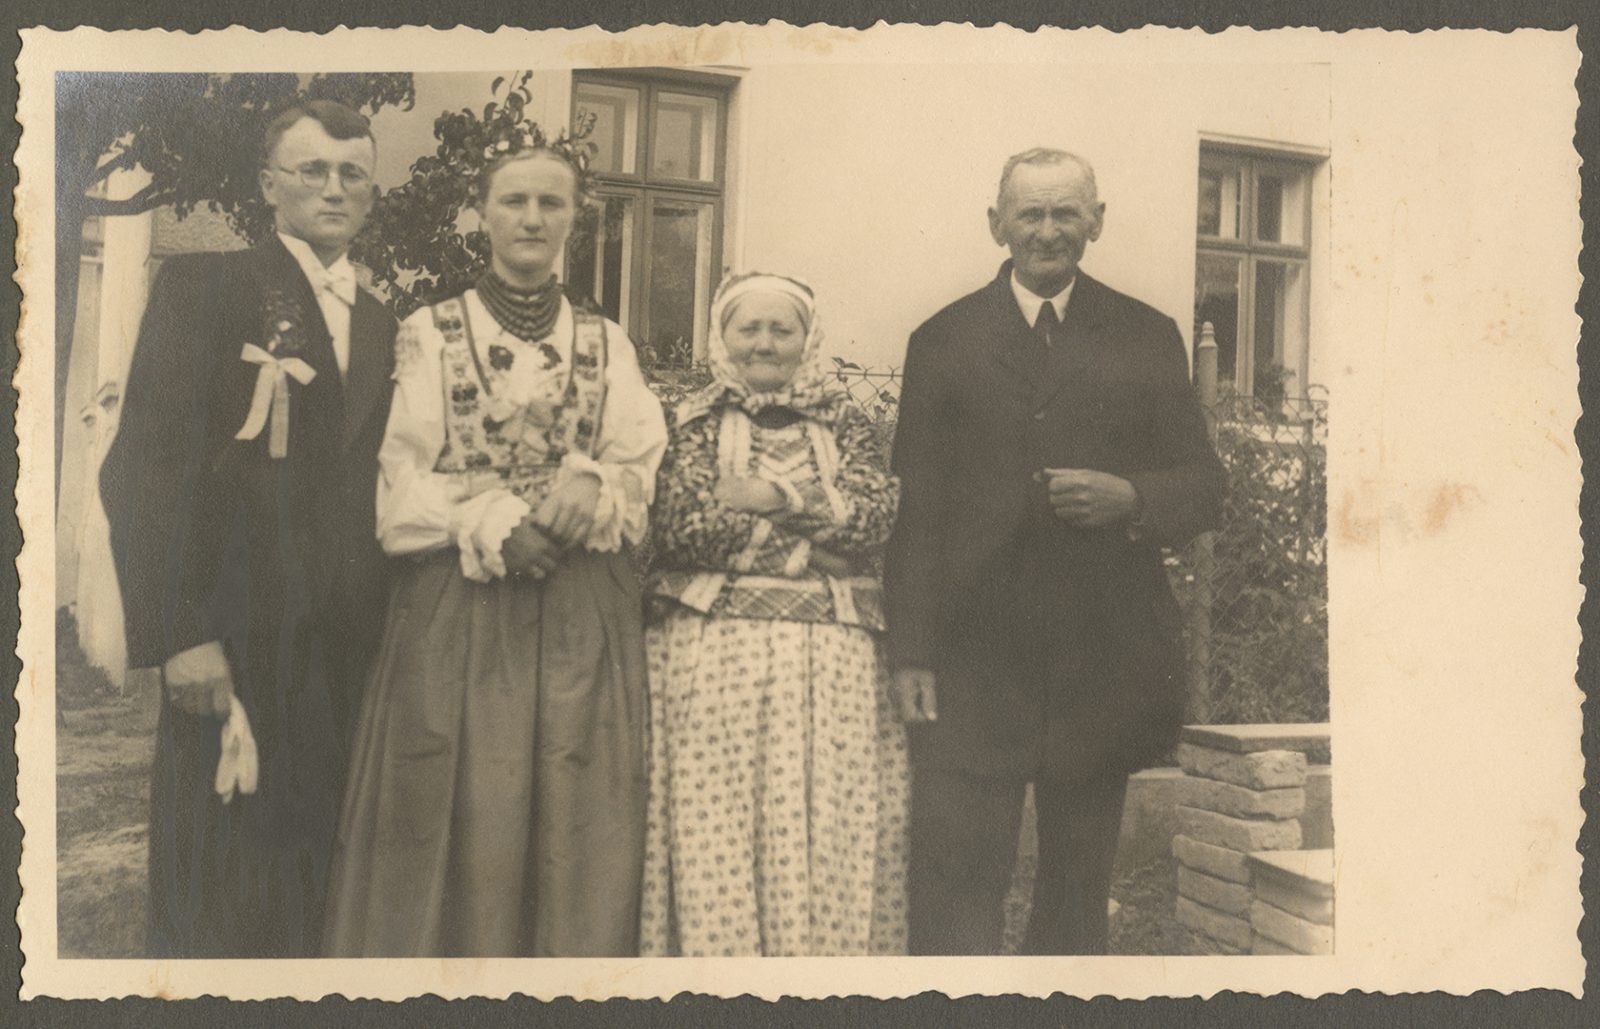 Para młoda: Anna Fox (Biöetuł-Mjyra) i Jan Bilczewski (Sekreter) z dziadkami pana młodego. 

Stroje męskie nie odbiegają od mody miejskiej. Sierpień 1935 r., fot. ze zbiorów Muzeum Historycznego w Bielsku-Białej.